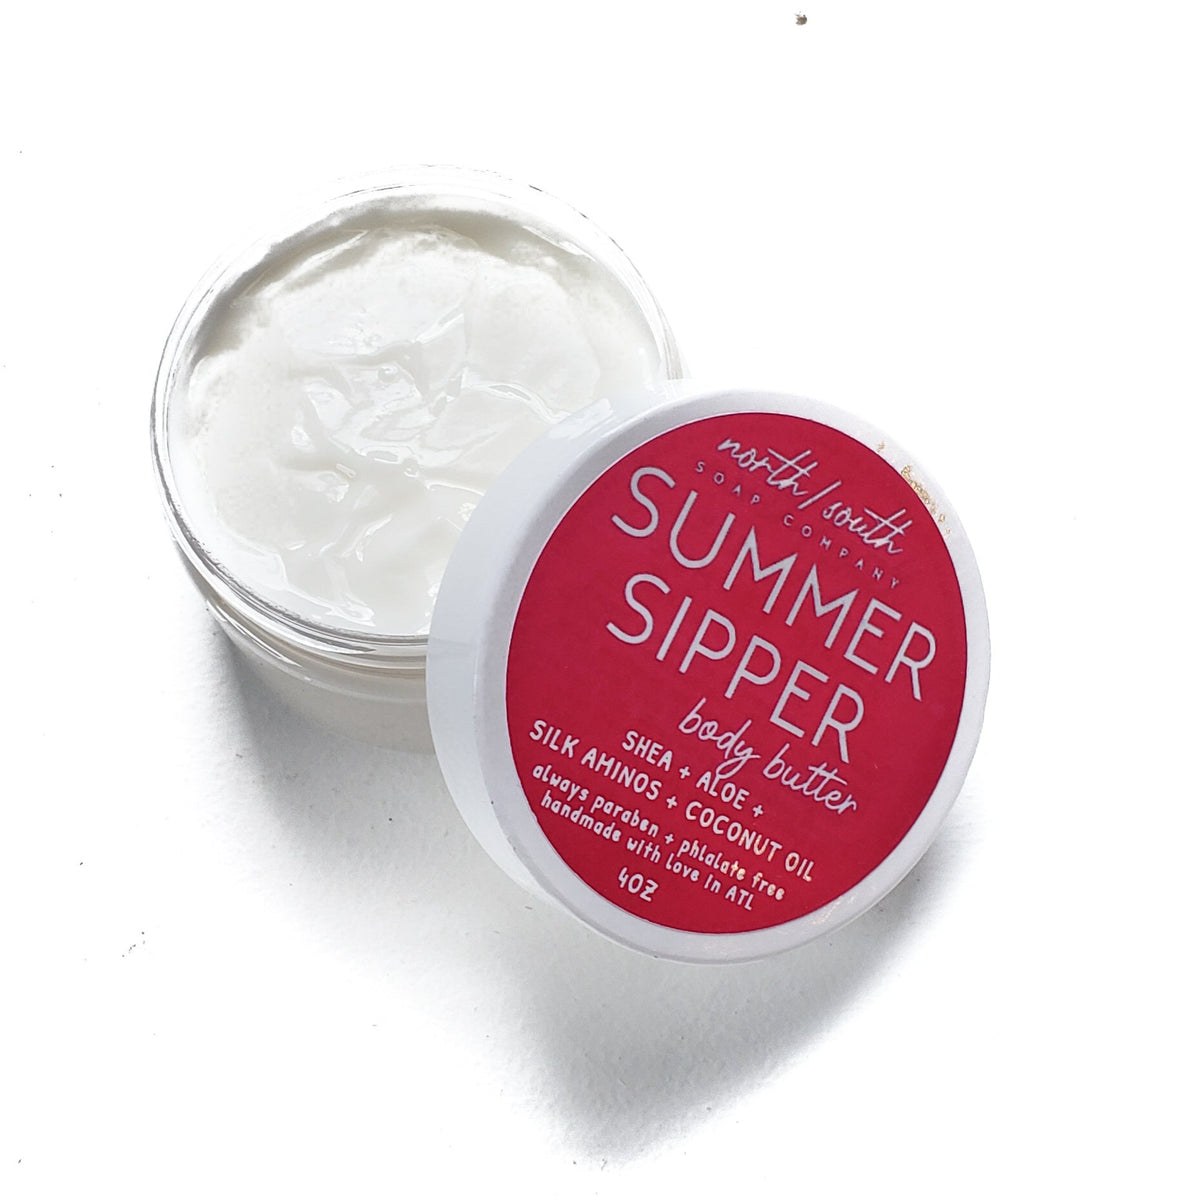 Summer Sipper Body Butter